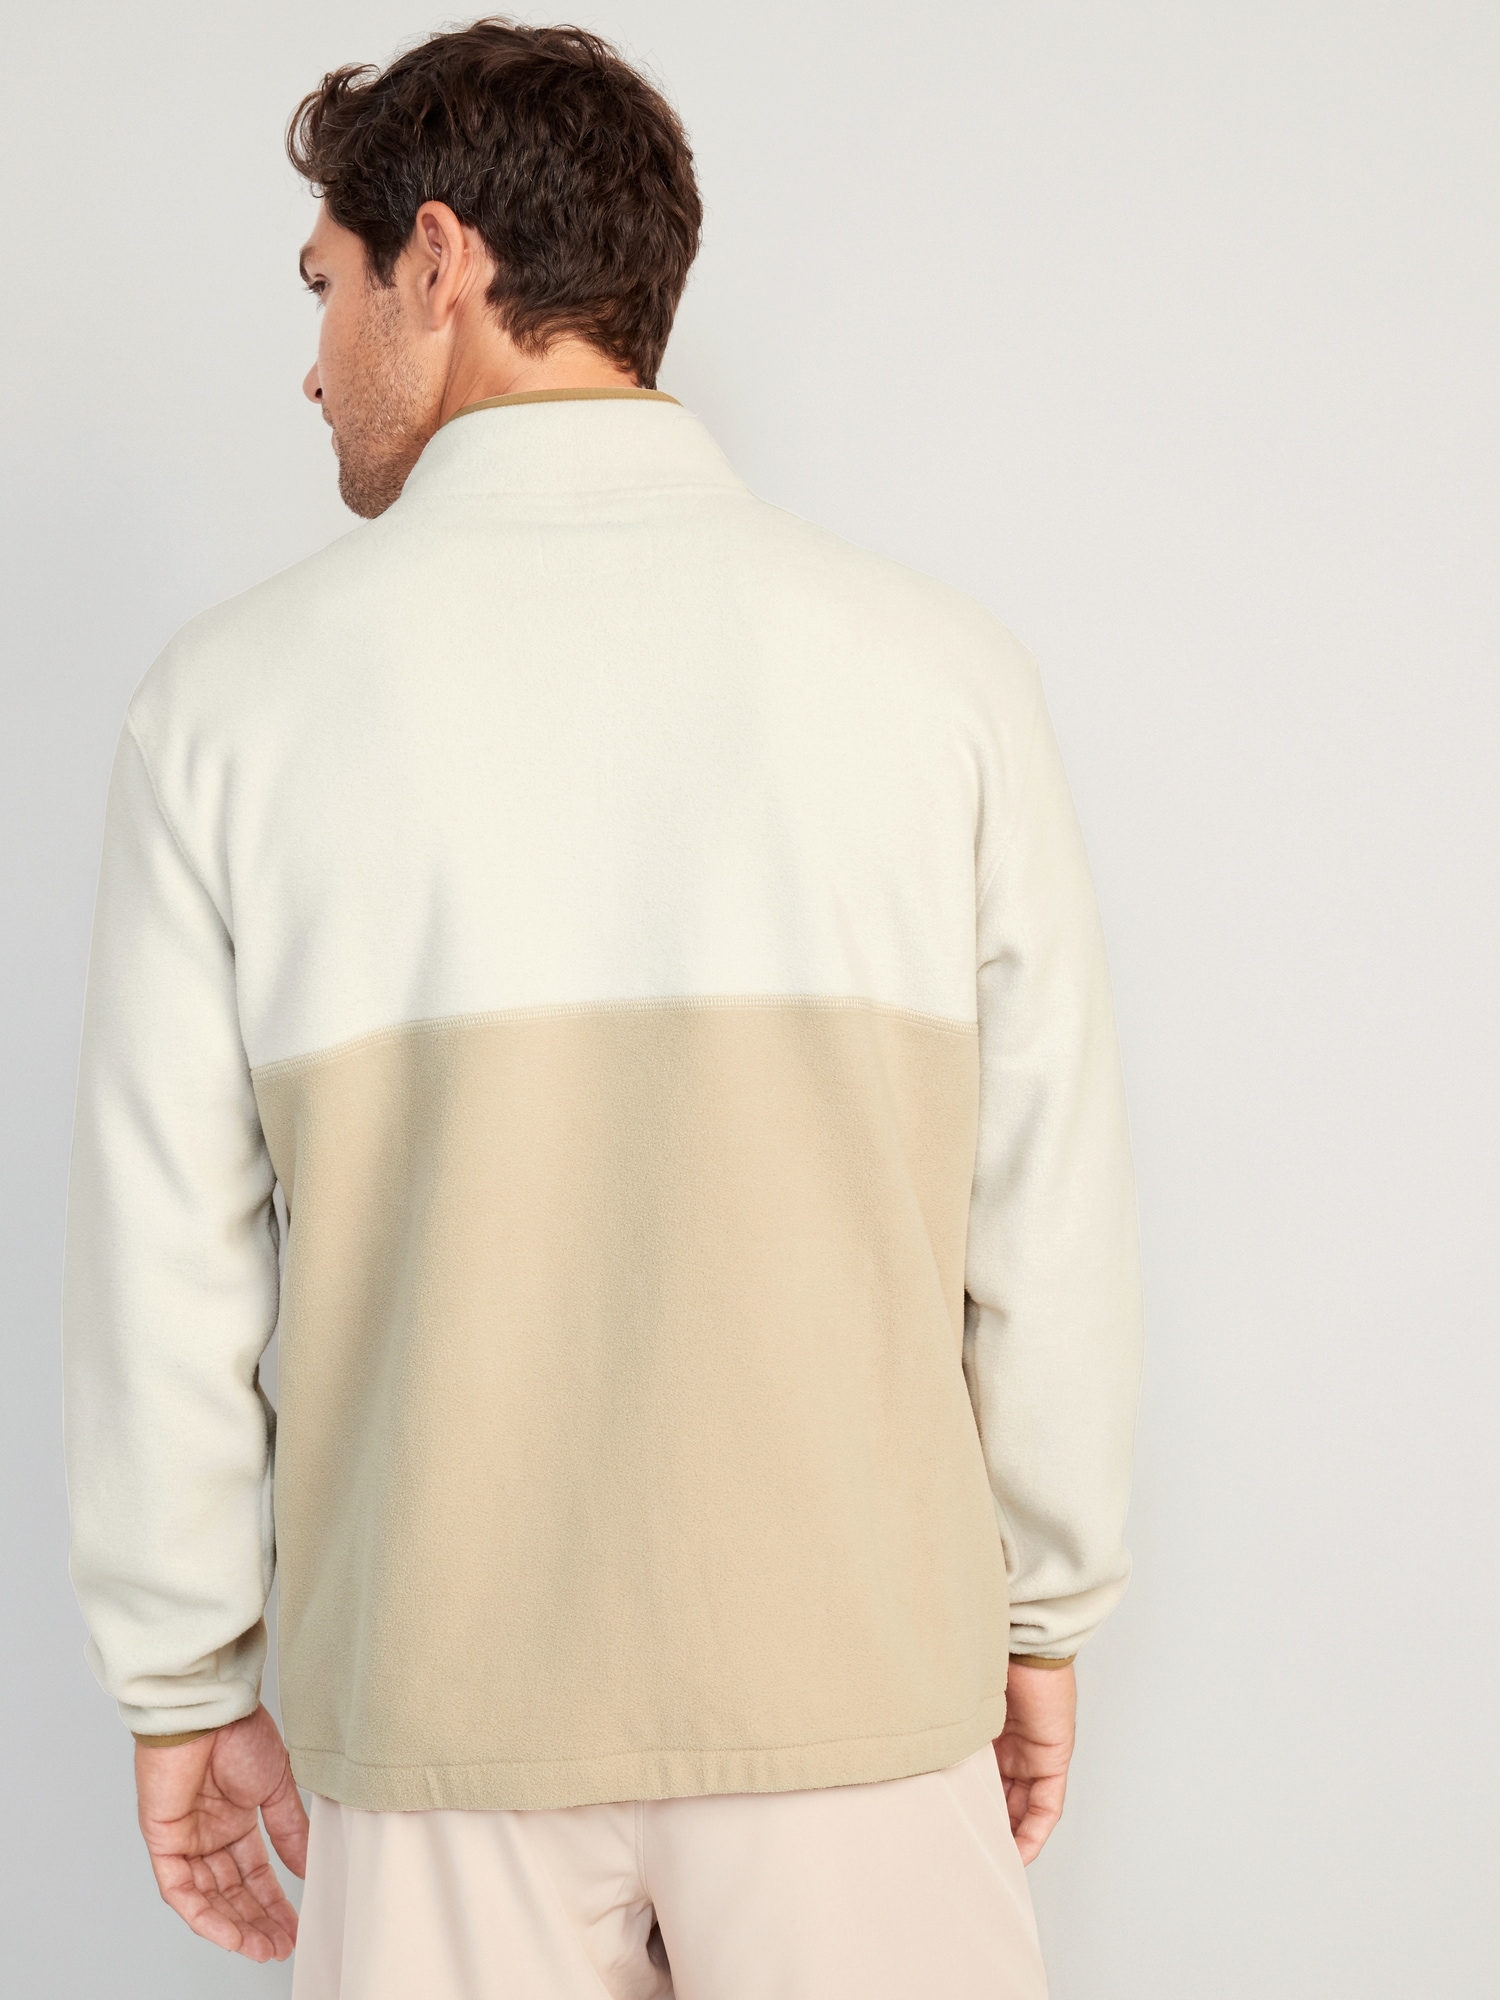 Oversized Micro-Fleece Zip Jacket for Men | Old Navy